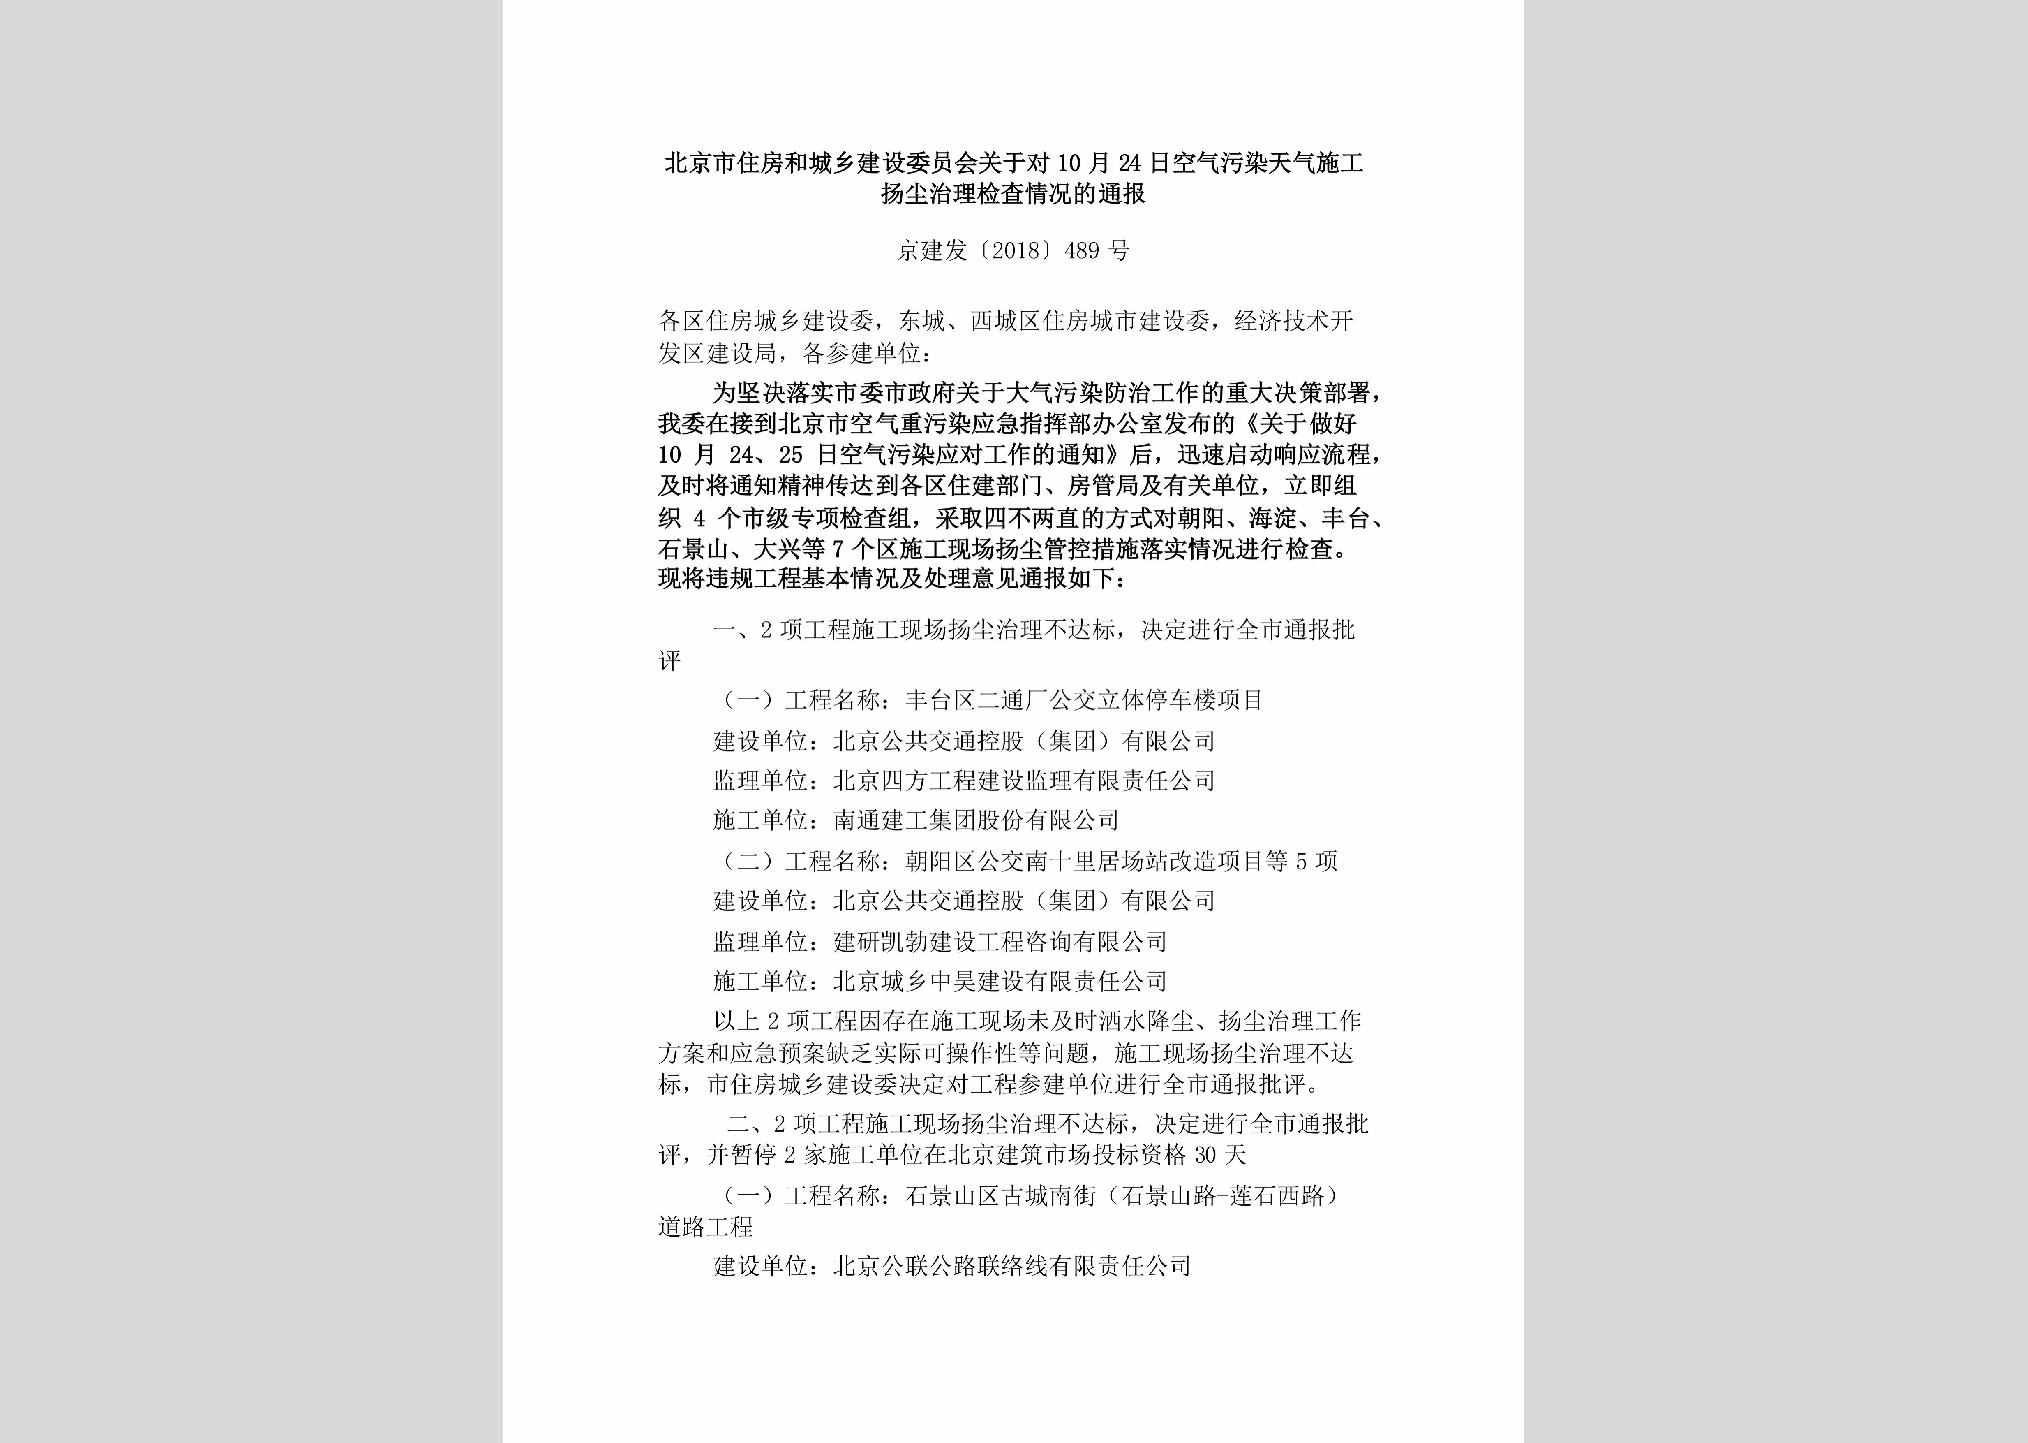 京建发[2018]489号：北京市住房和城乡建设委员会关于对10月24日空气污染天气施工扬尘治理检查情况的通报